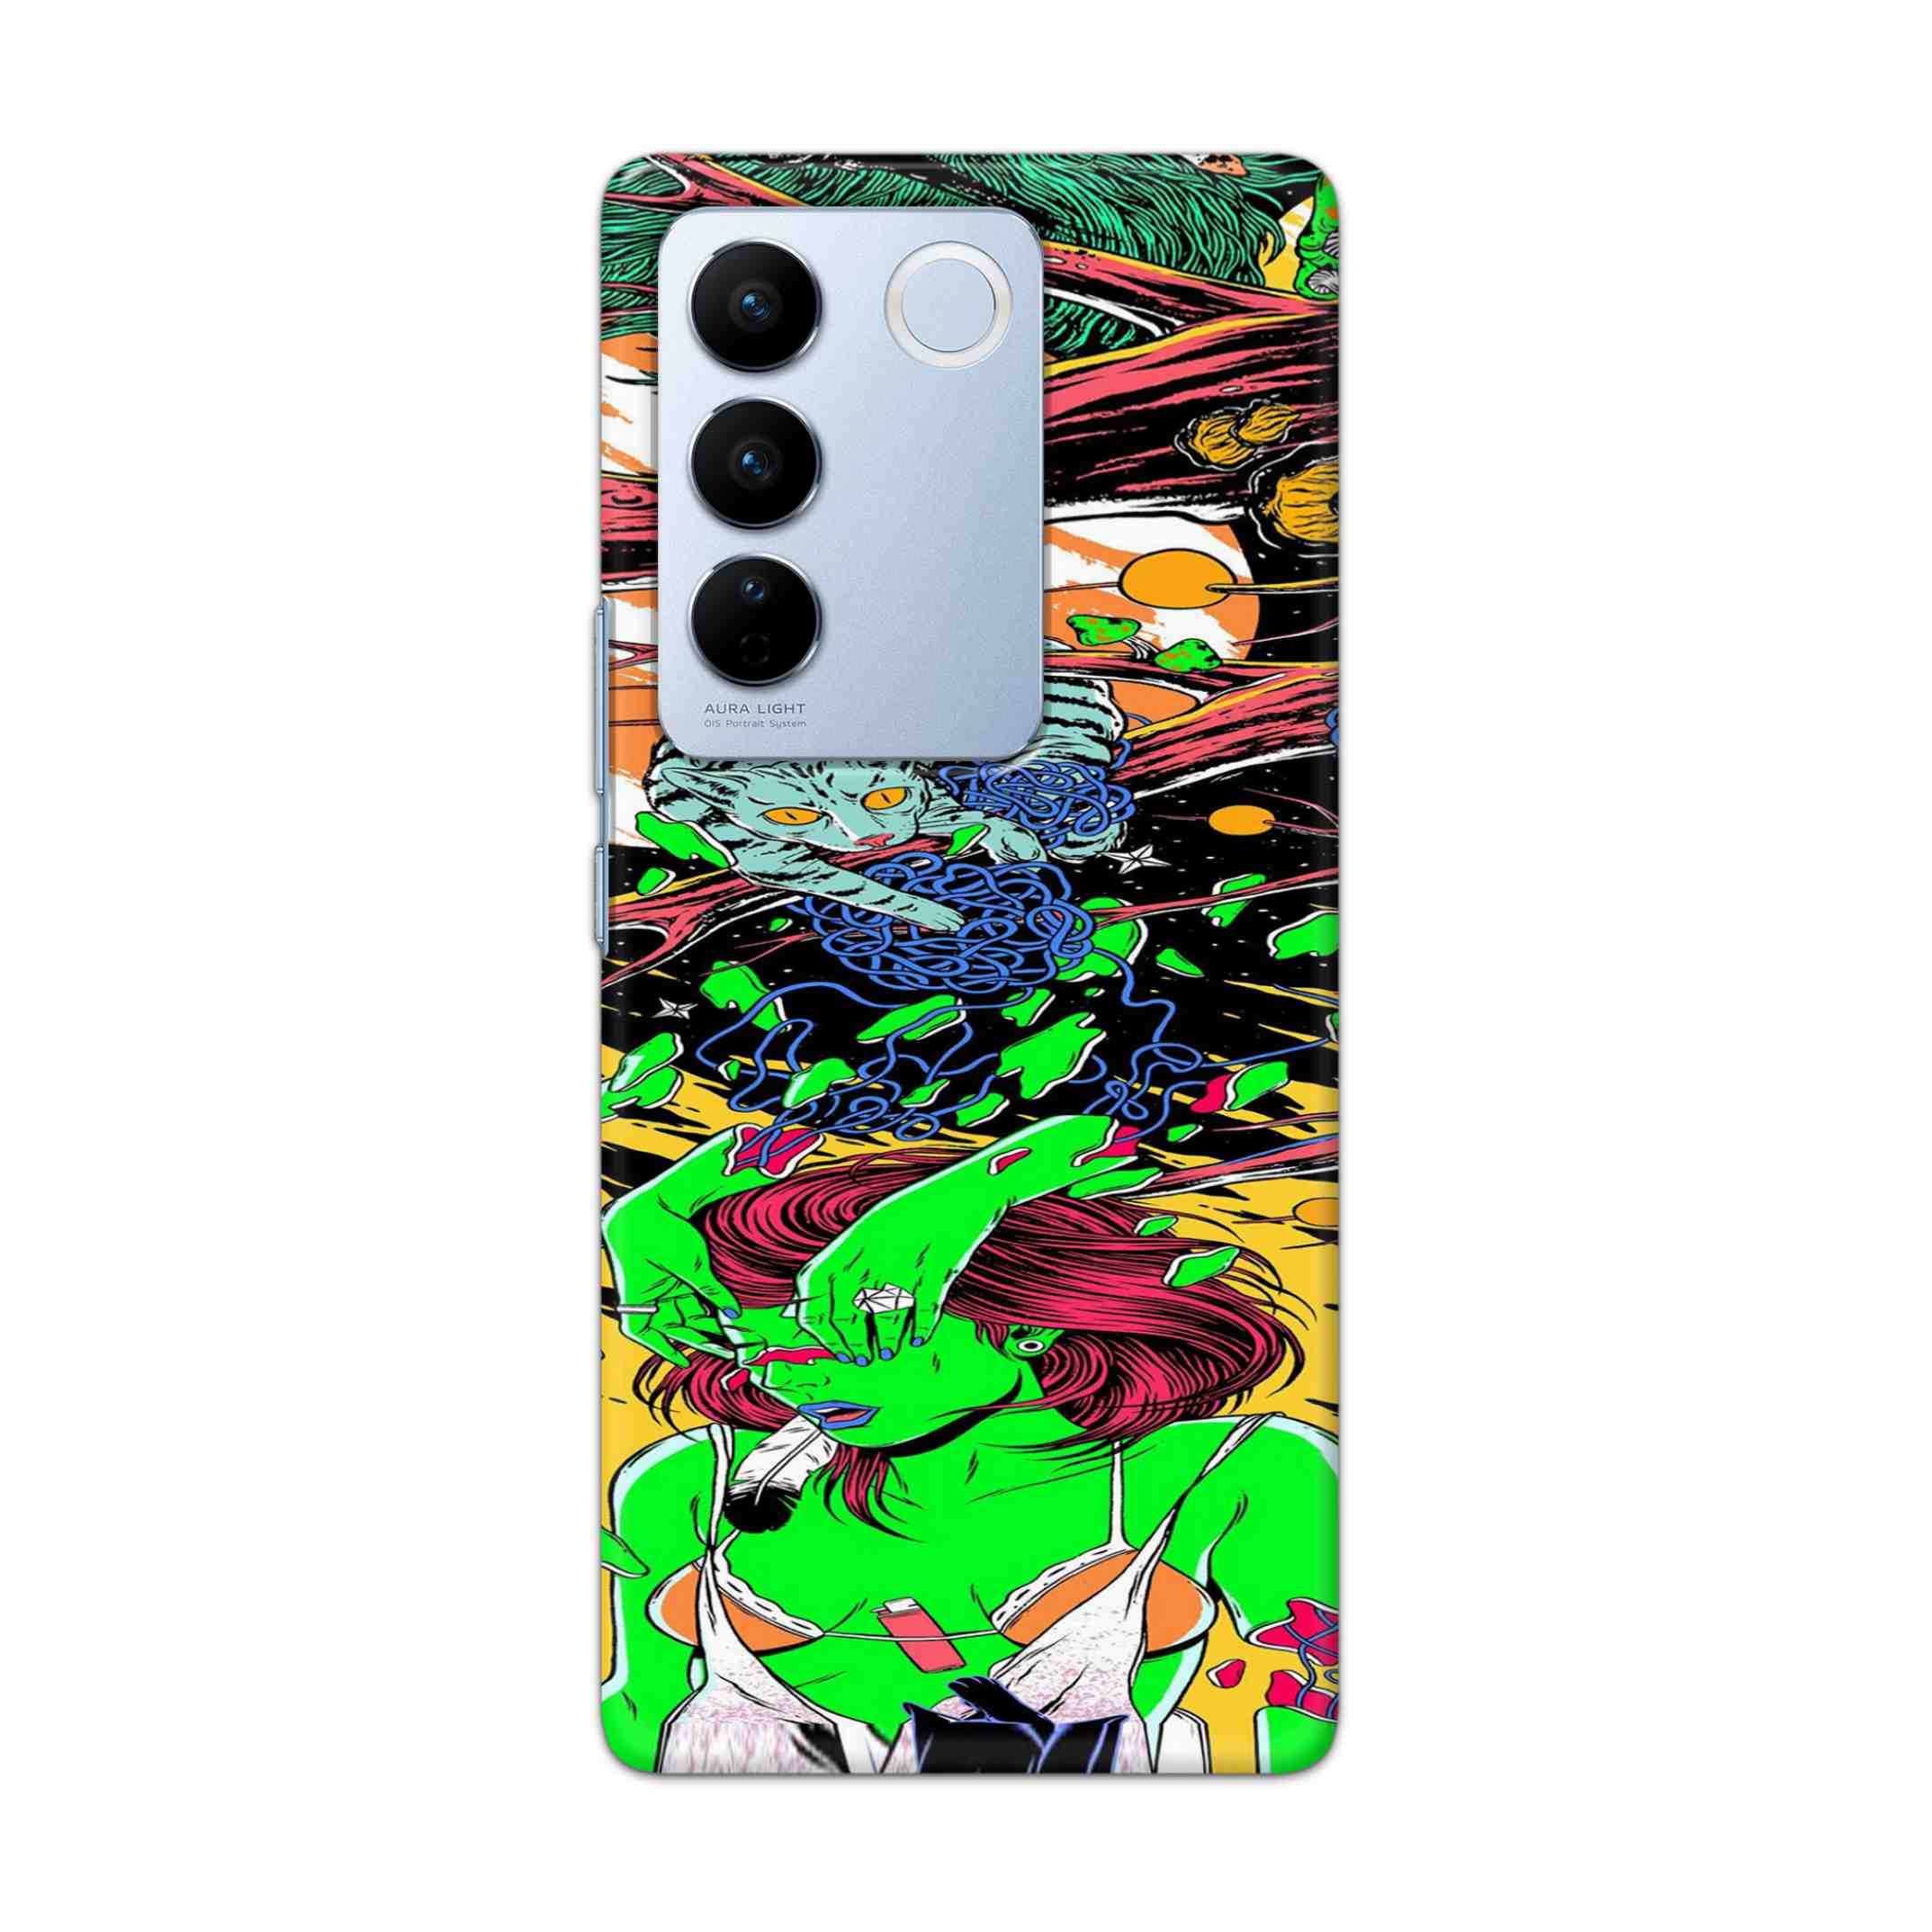 Buy Green Girl Art Hard Back Mobile Phone Case Cover For Vivo V27 Online